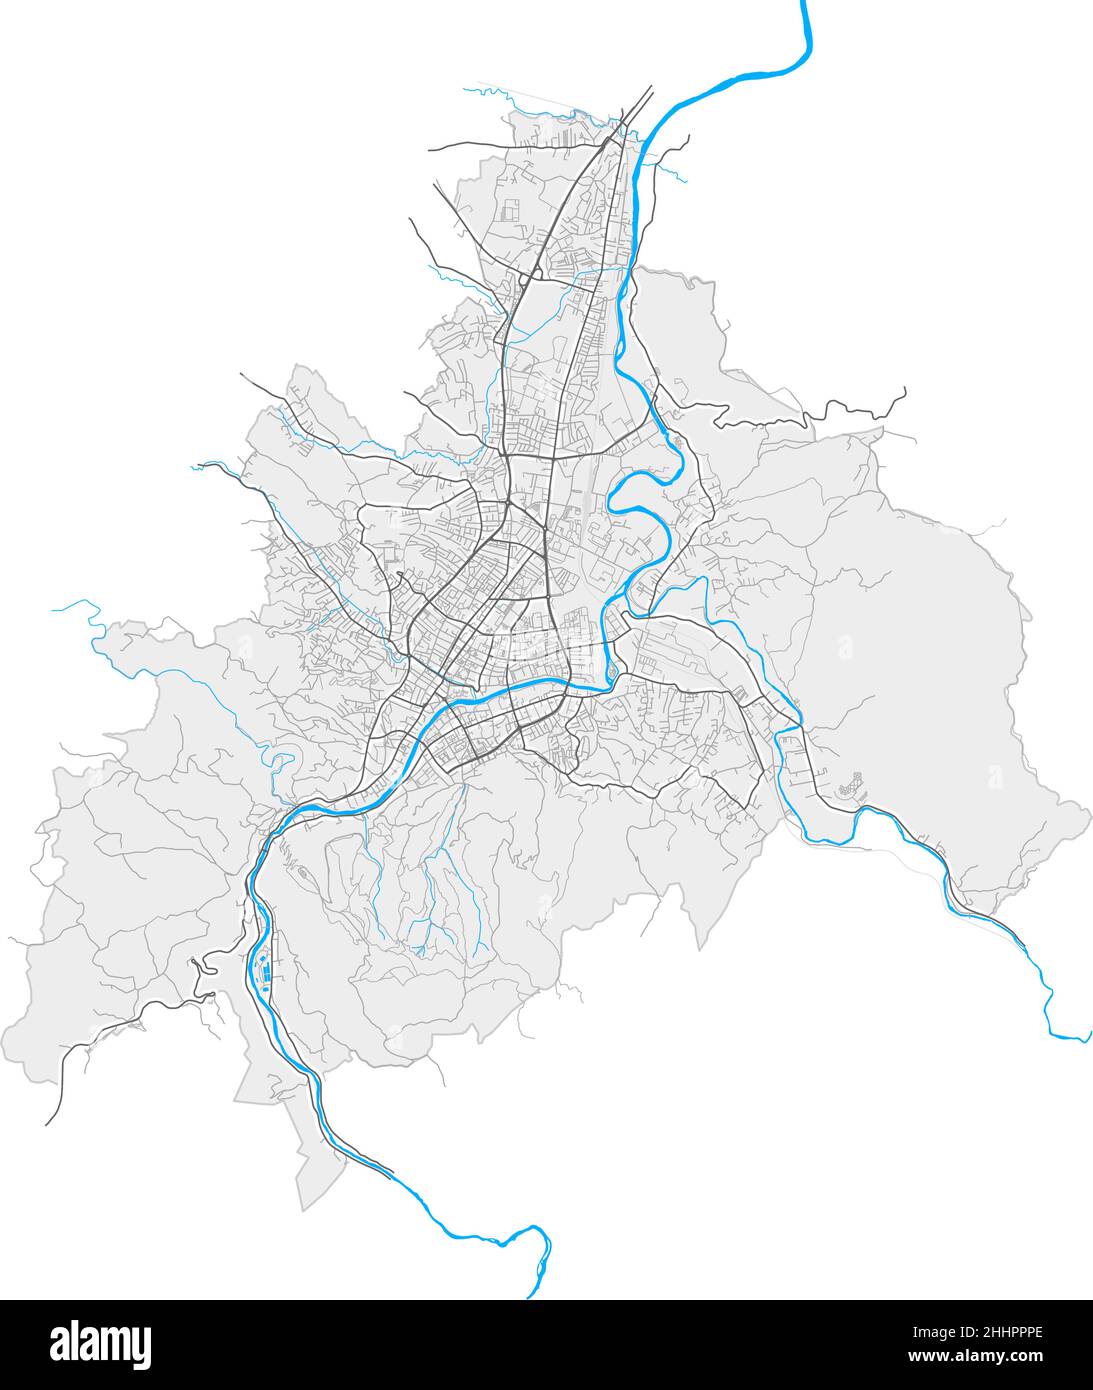 Banjaluka, Republika Srpska, BosniaandErzegovina mappa vettoriale ad alta risoluzione con confini della città e percorsi modificabili. Contorni bianchi per le strade principali. M Illustrazione Vettoriale